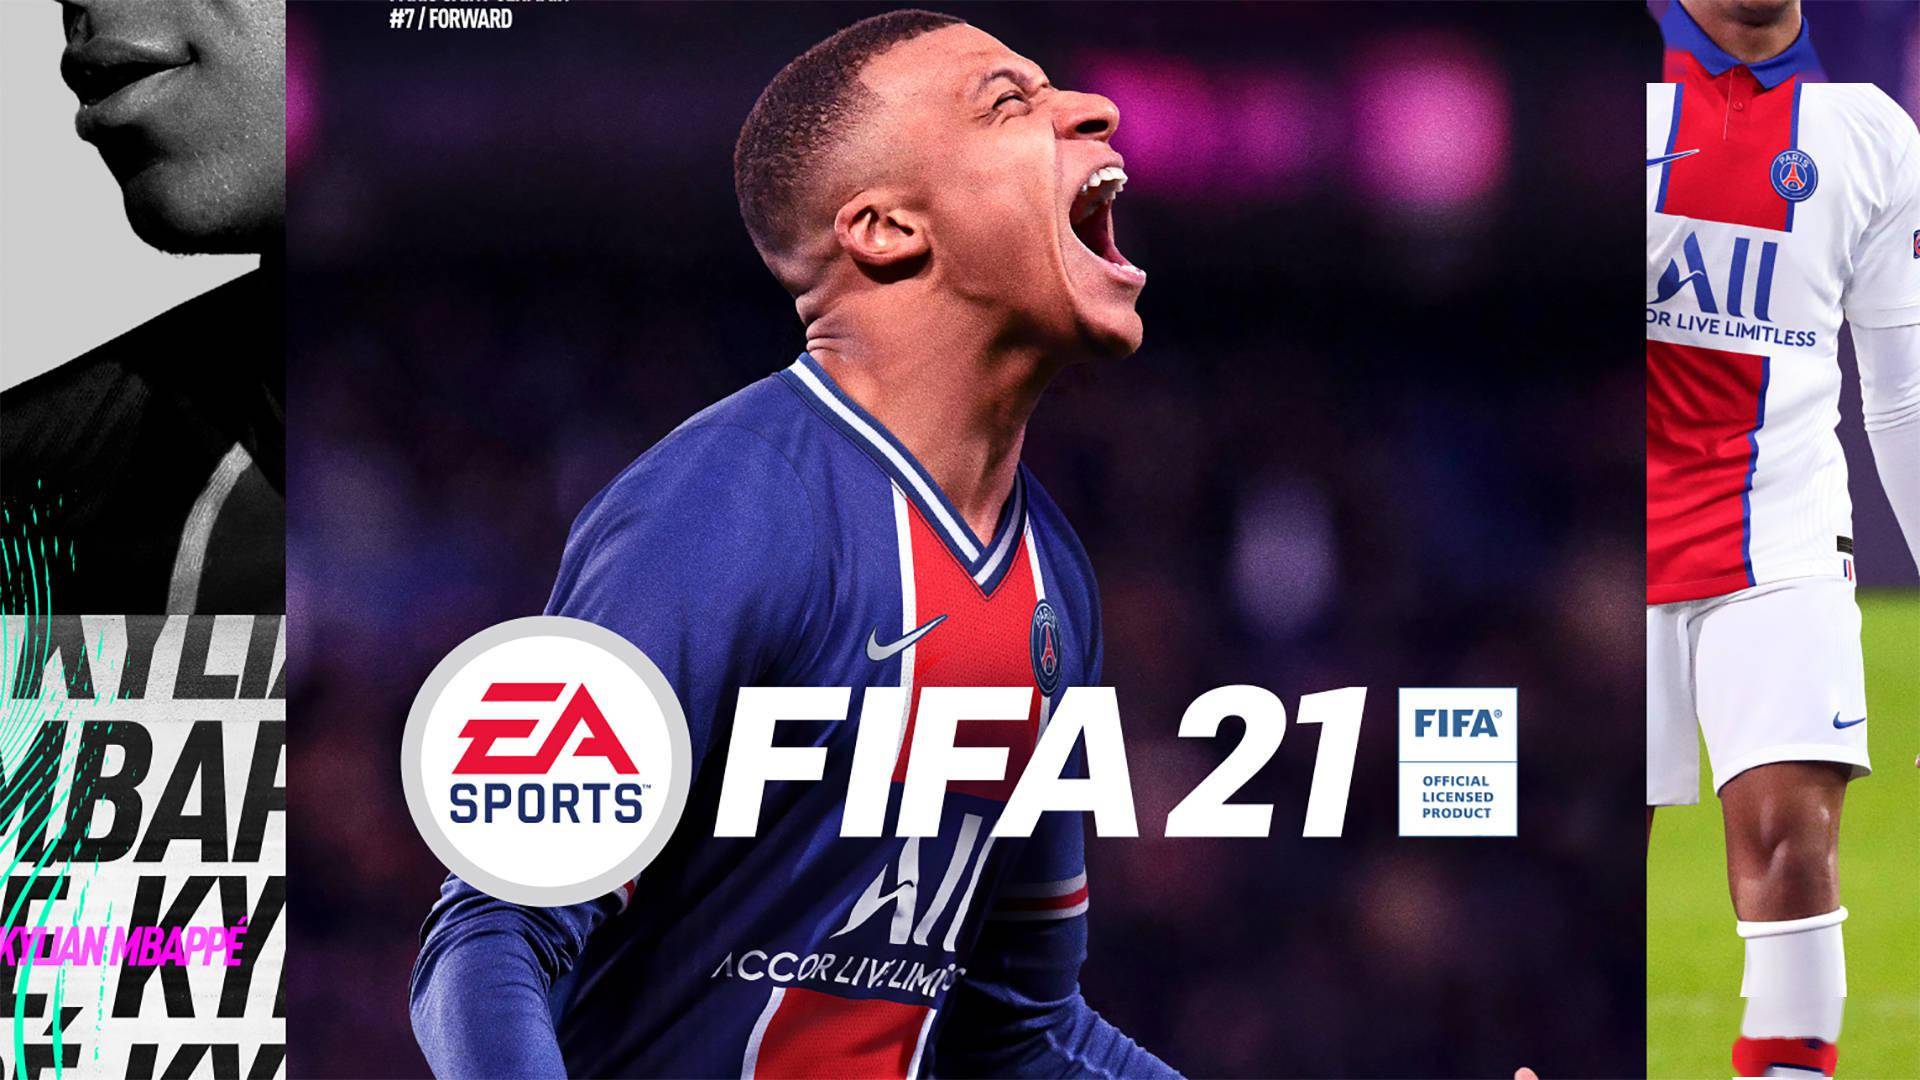 英国新一周游戏销量榜出炉《FIFA21》再度夺冠